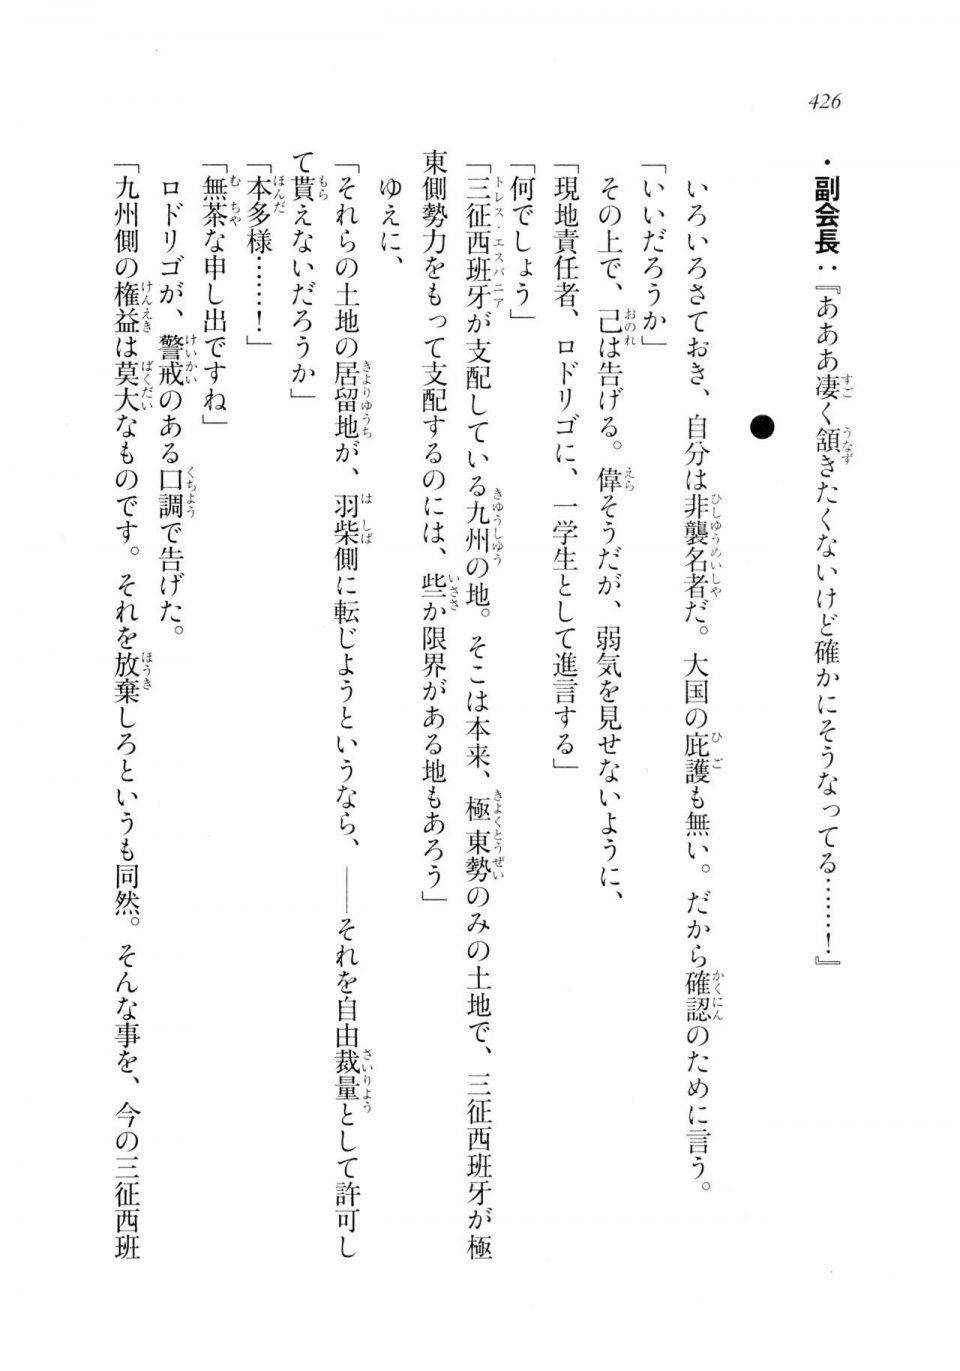 Kyoukai Senjou no Horizon LN Sidestory Vol 2 - Photo #424